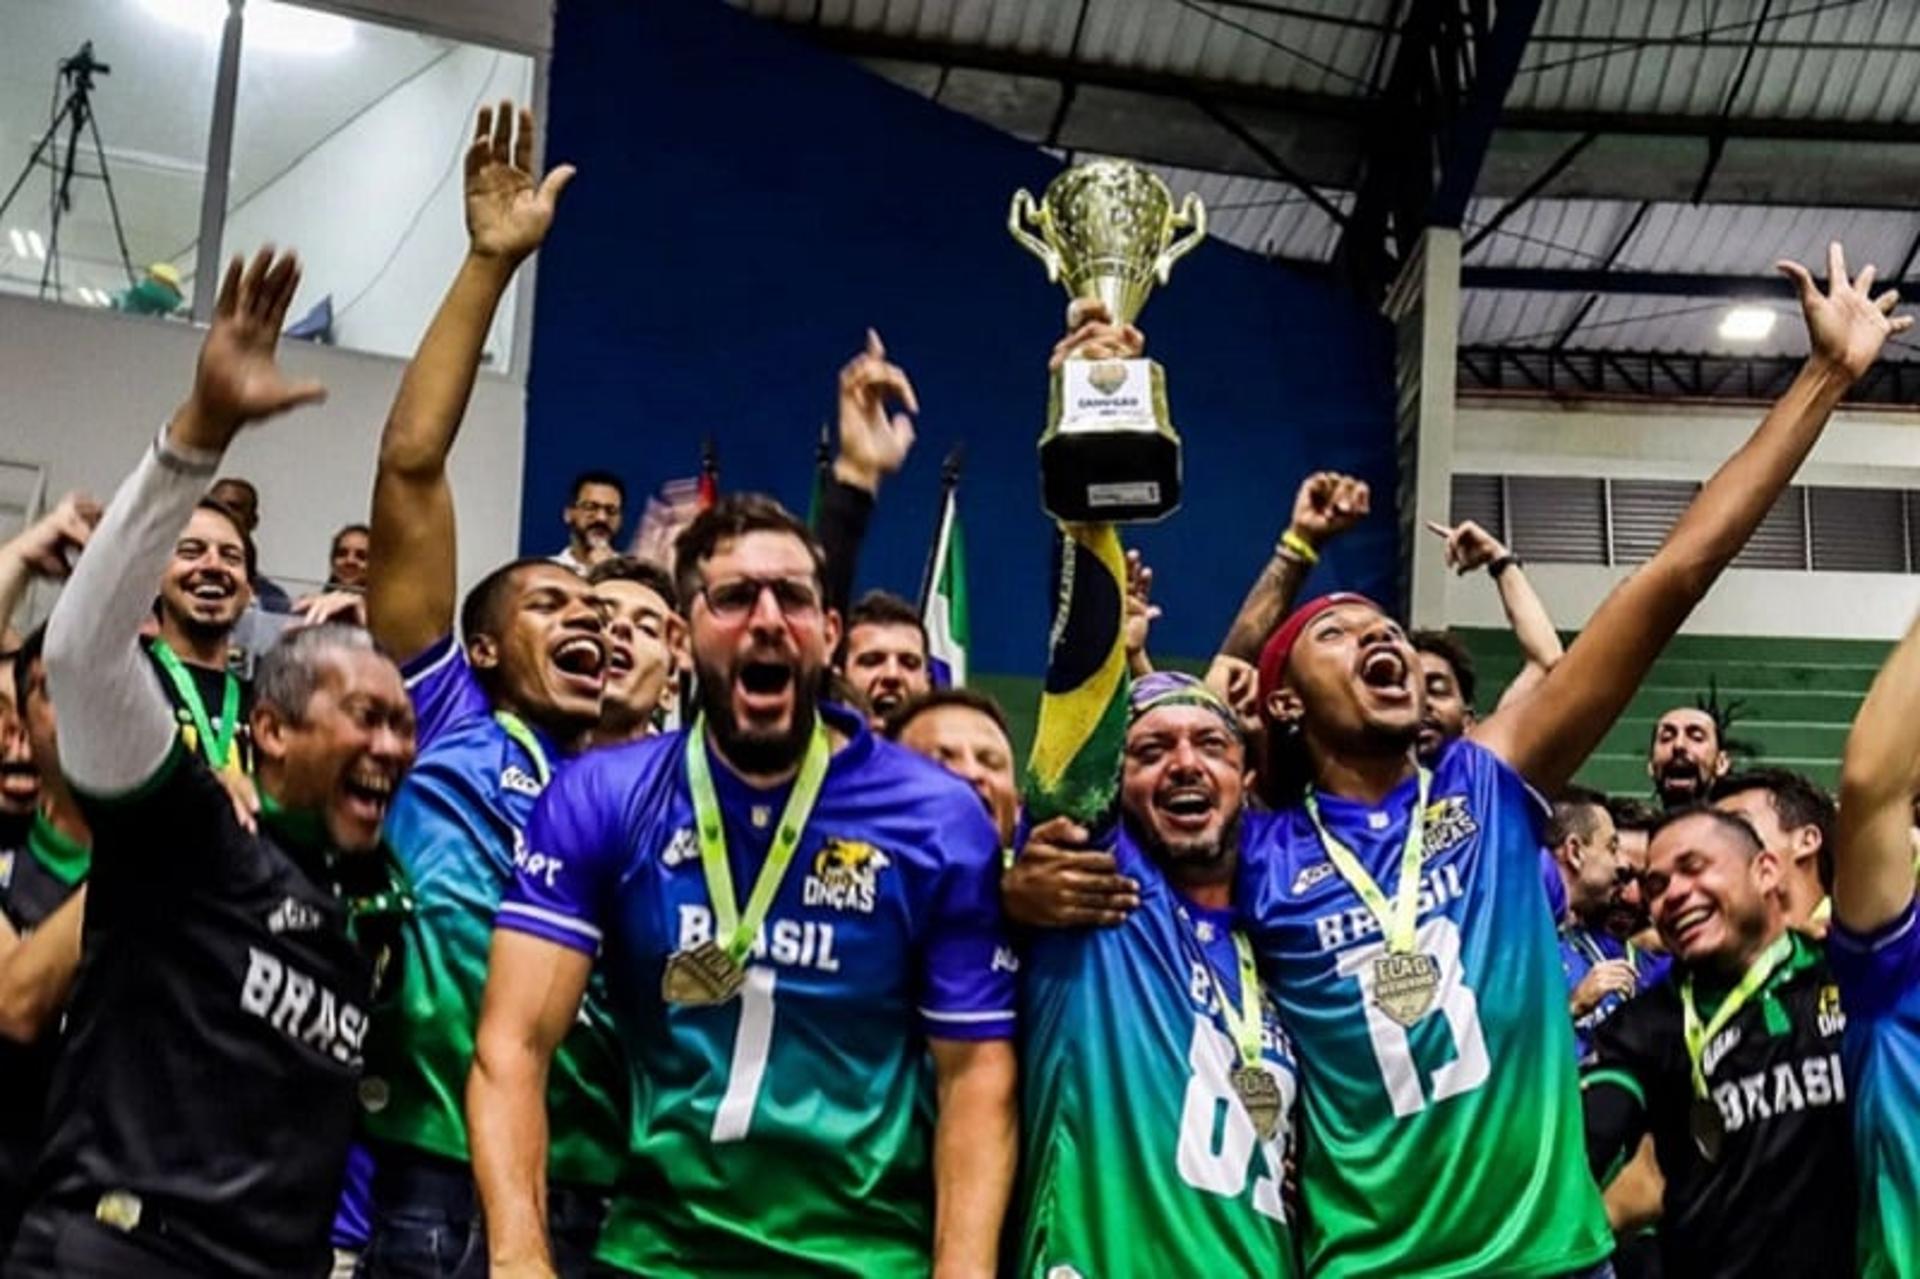 Seleção Brasileira de Flag Football conquistou o Sul-Americano da categoria em dezembro passado